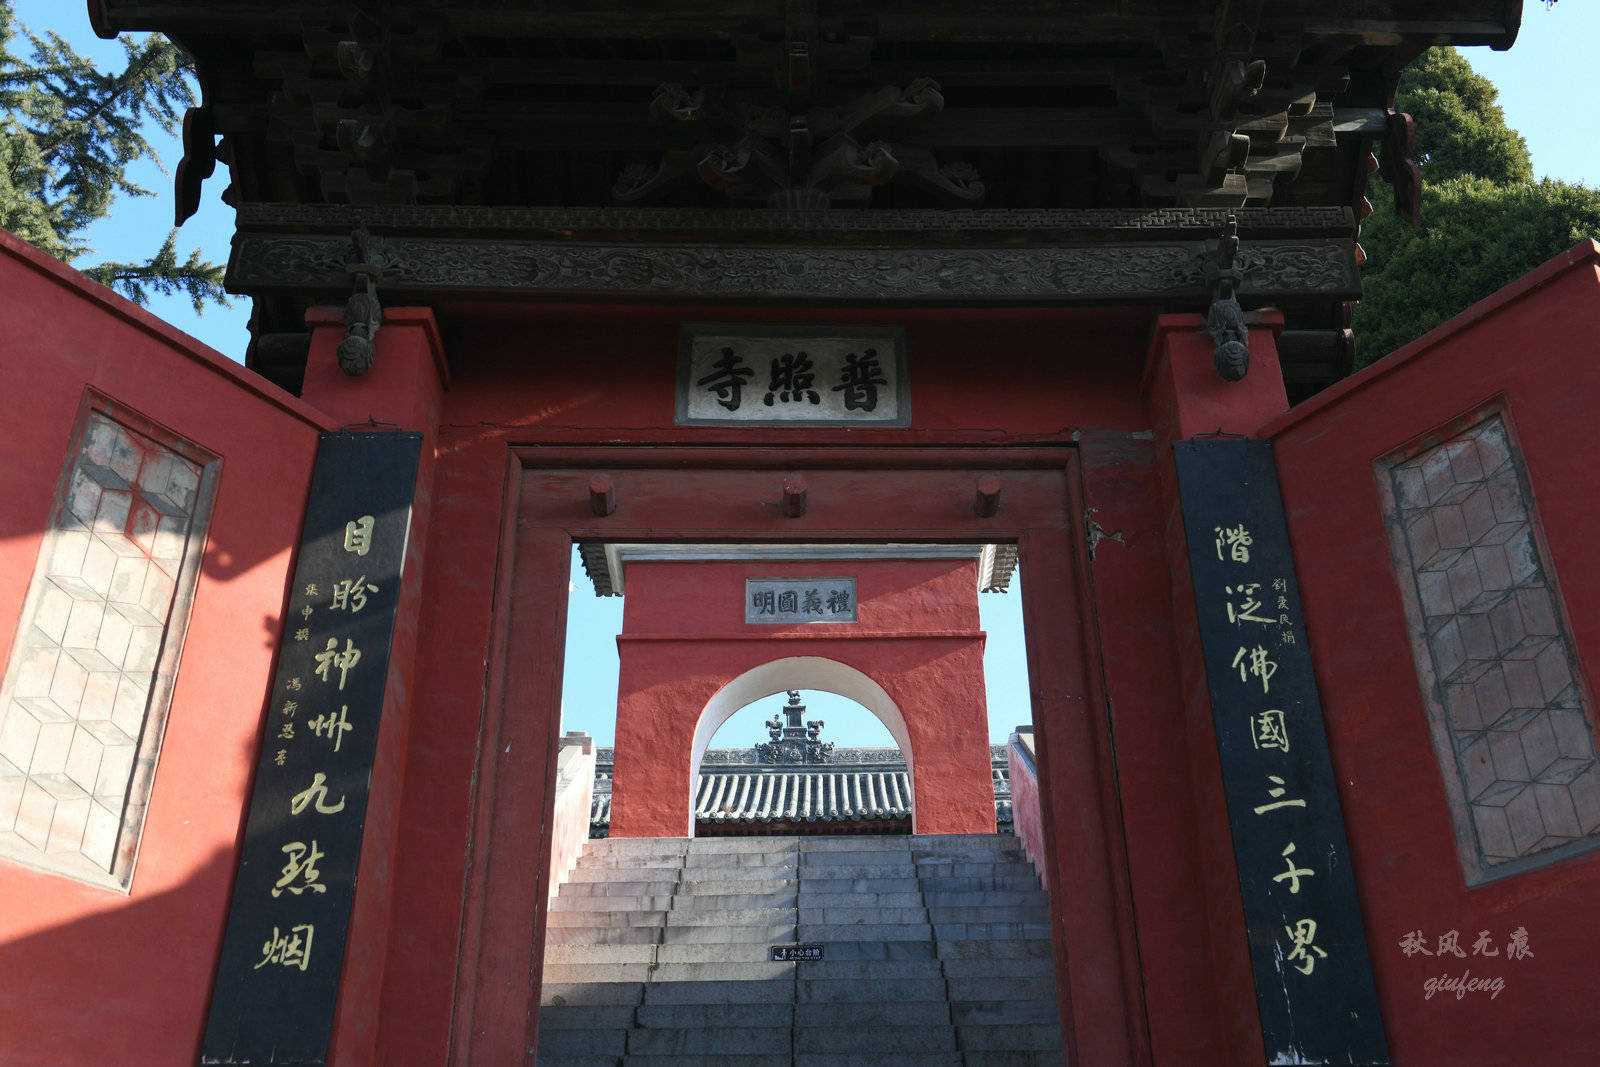 正月韩城触摸元代建筑与黄河文化之美